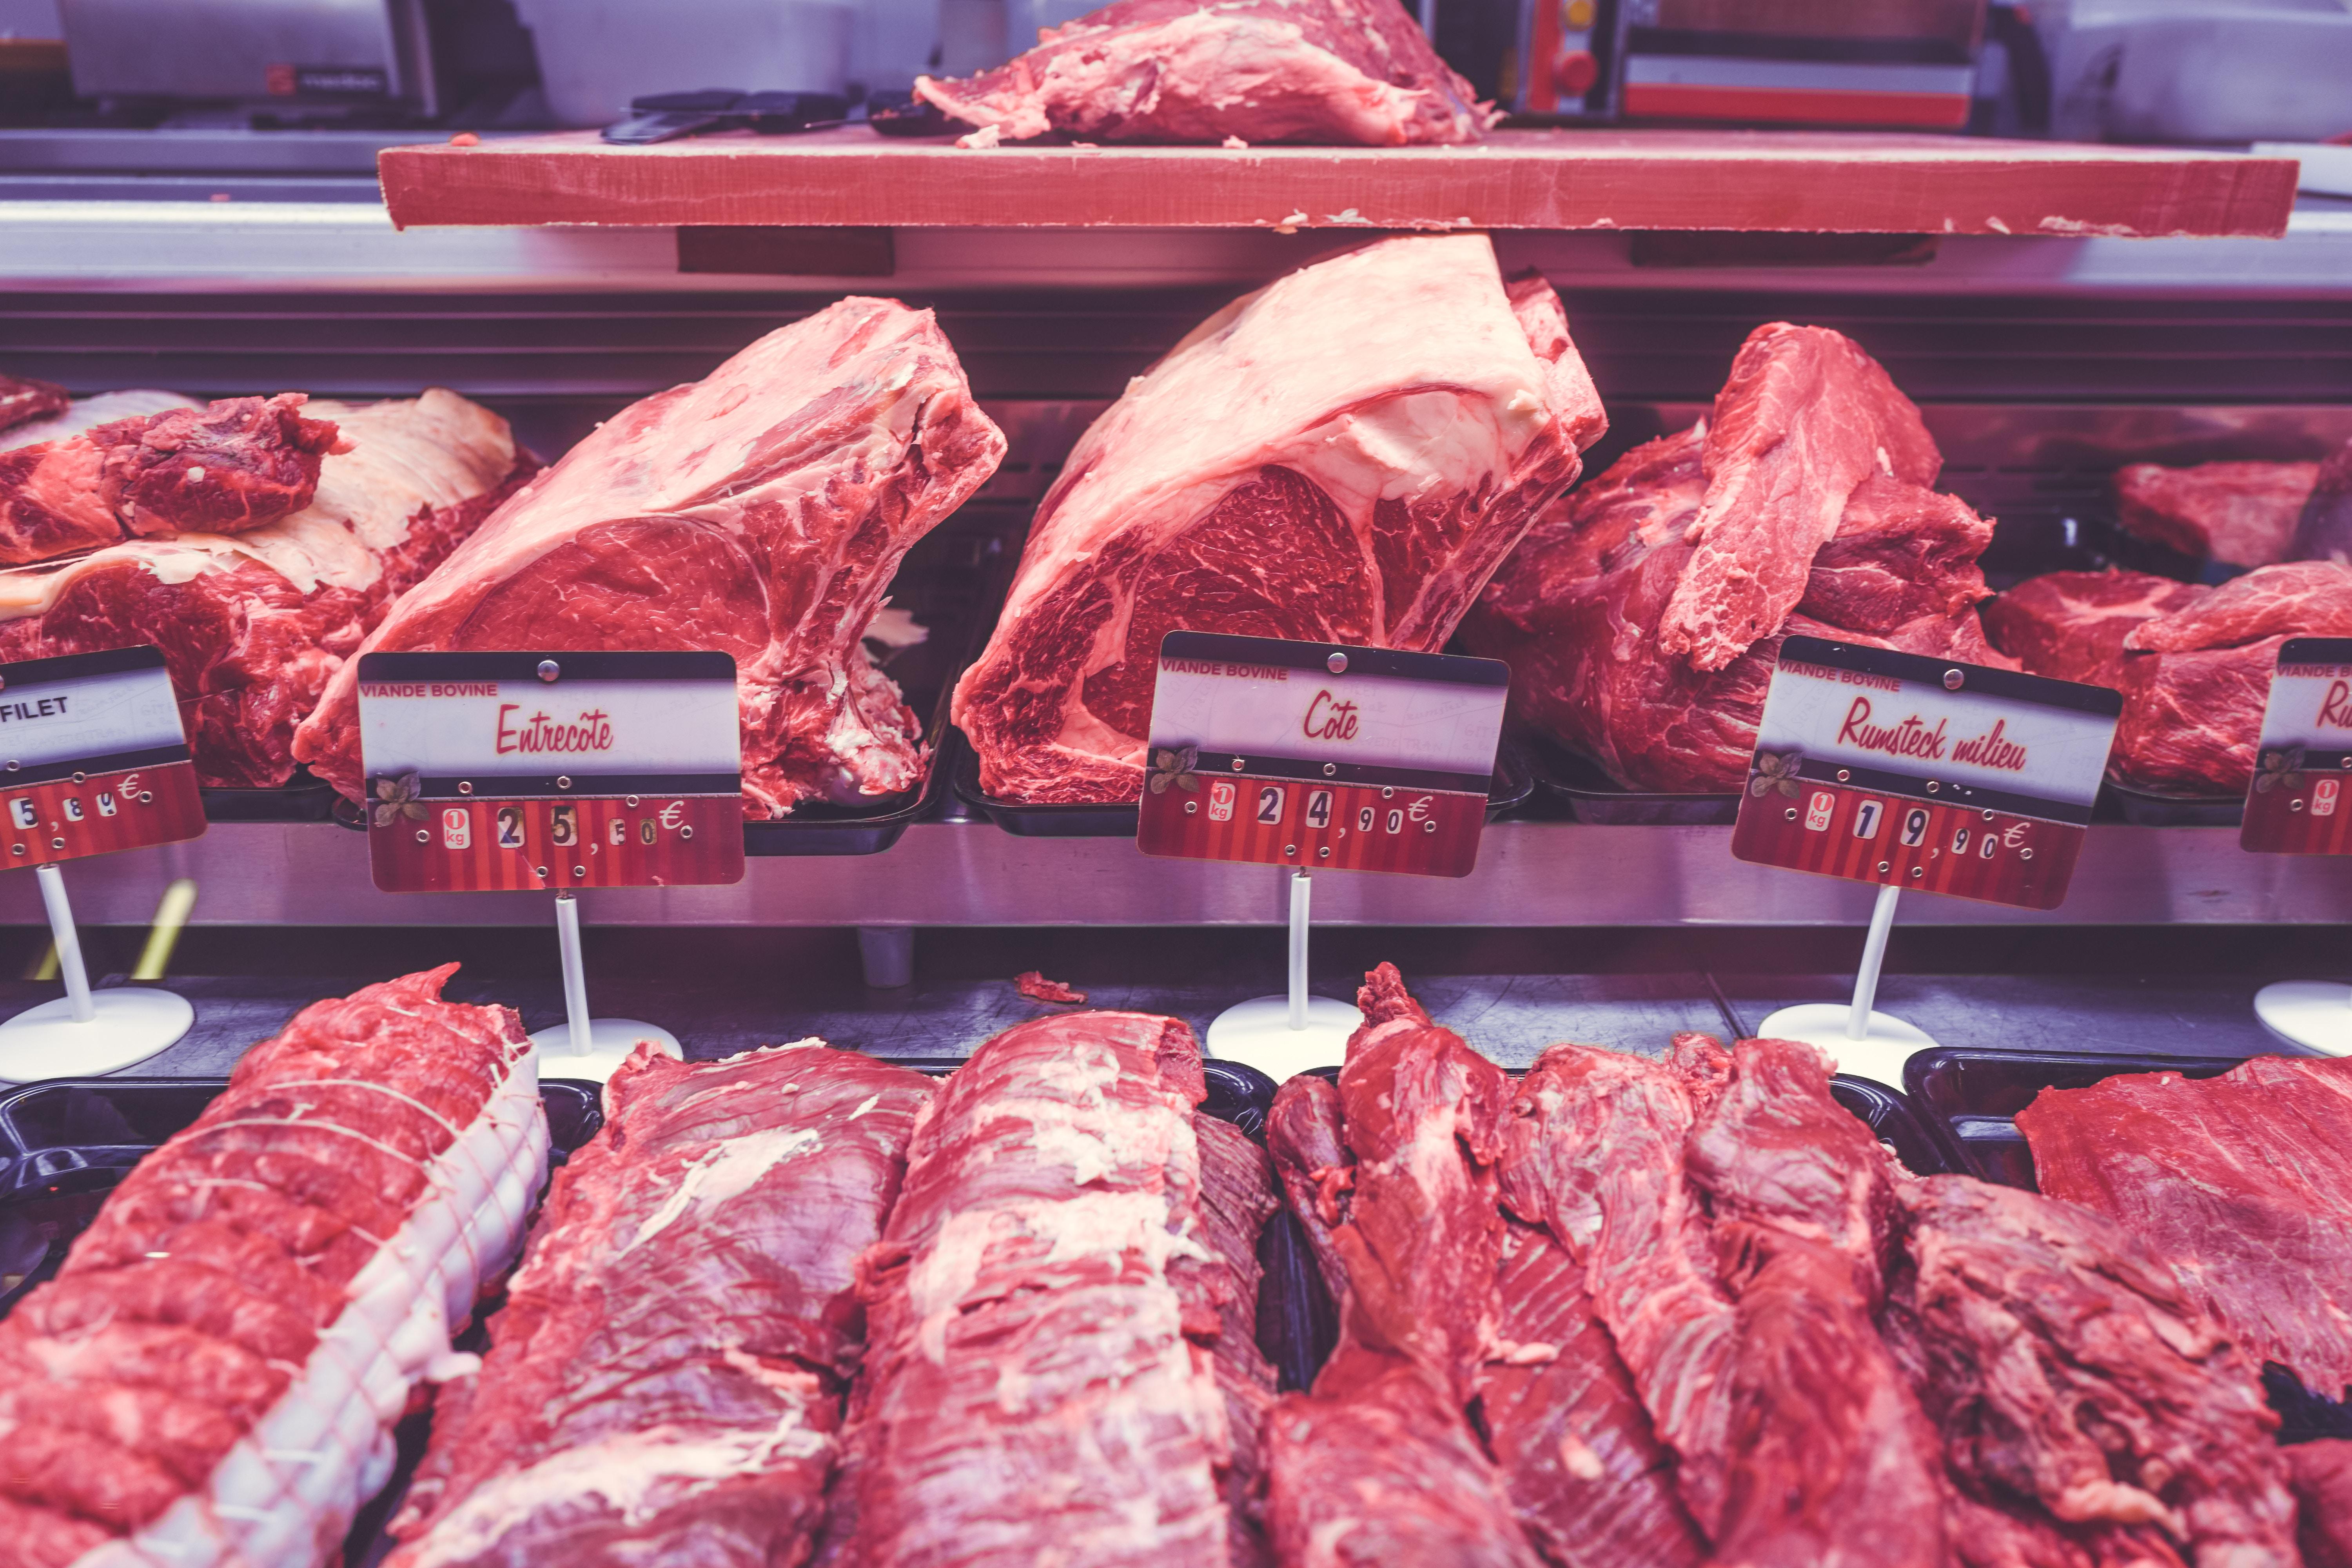 #spanish, #butcher shop, #Public domain image, #meat